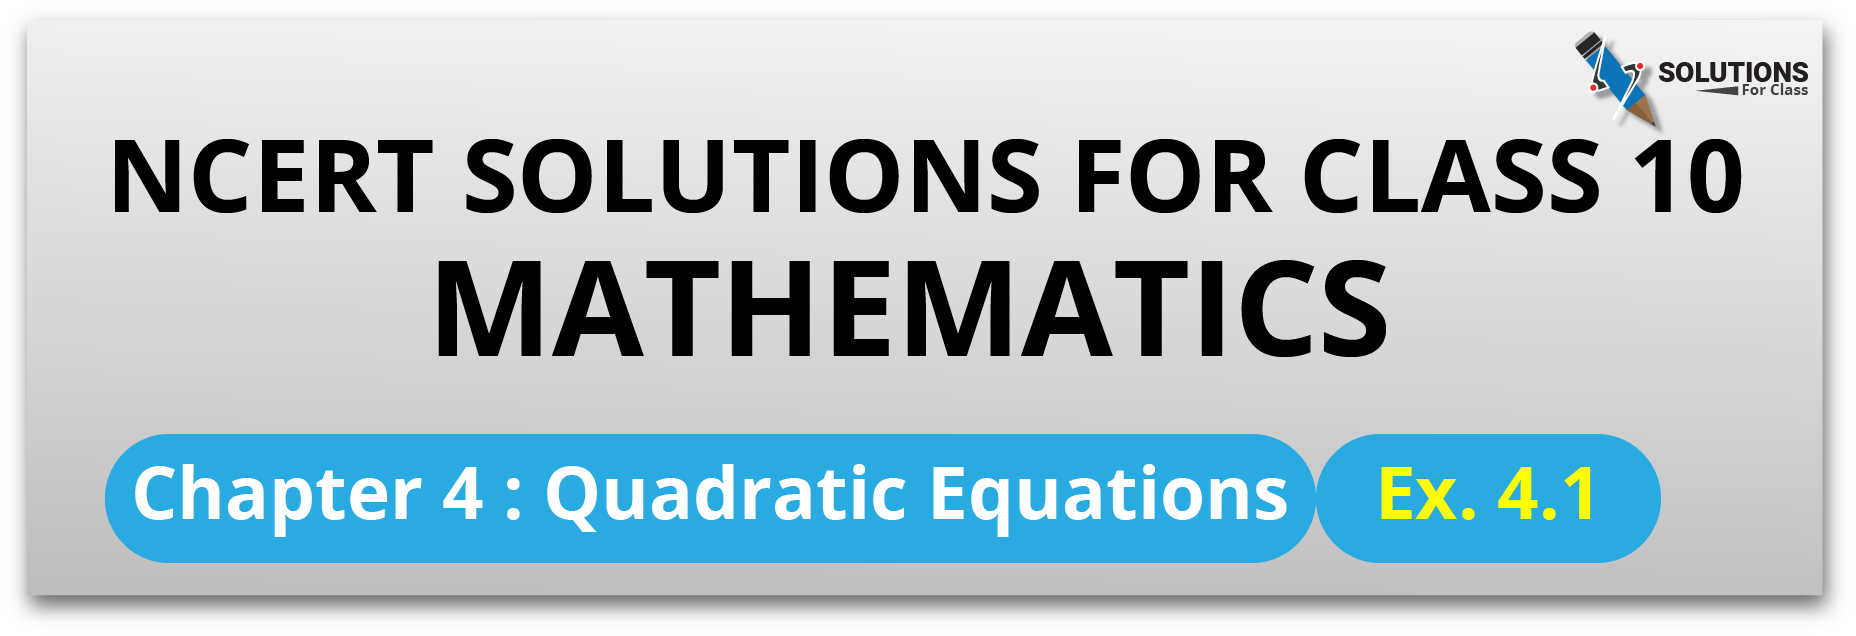 Chapter 4, Quadratic Equations Ex. 4.1